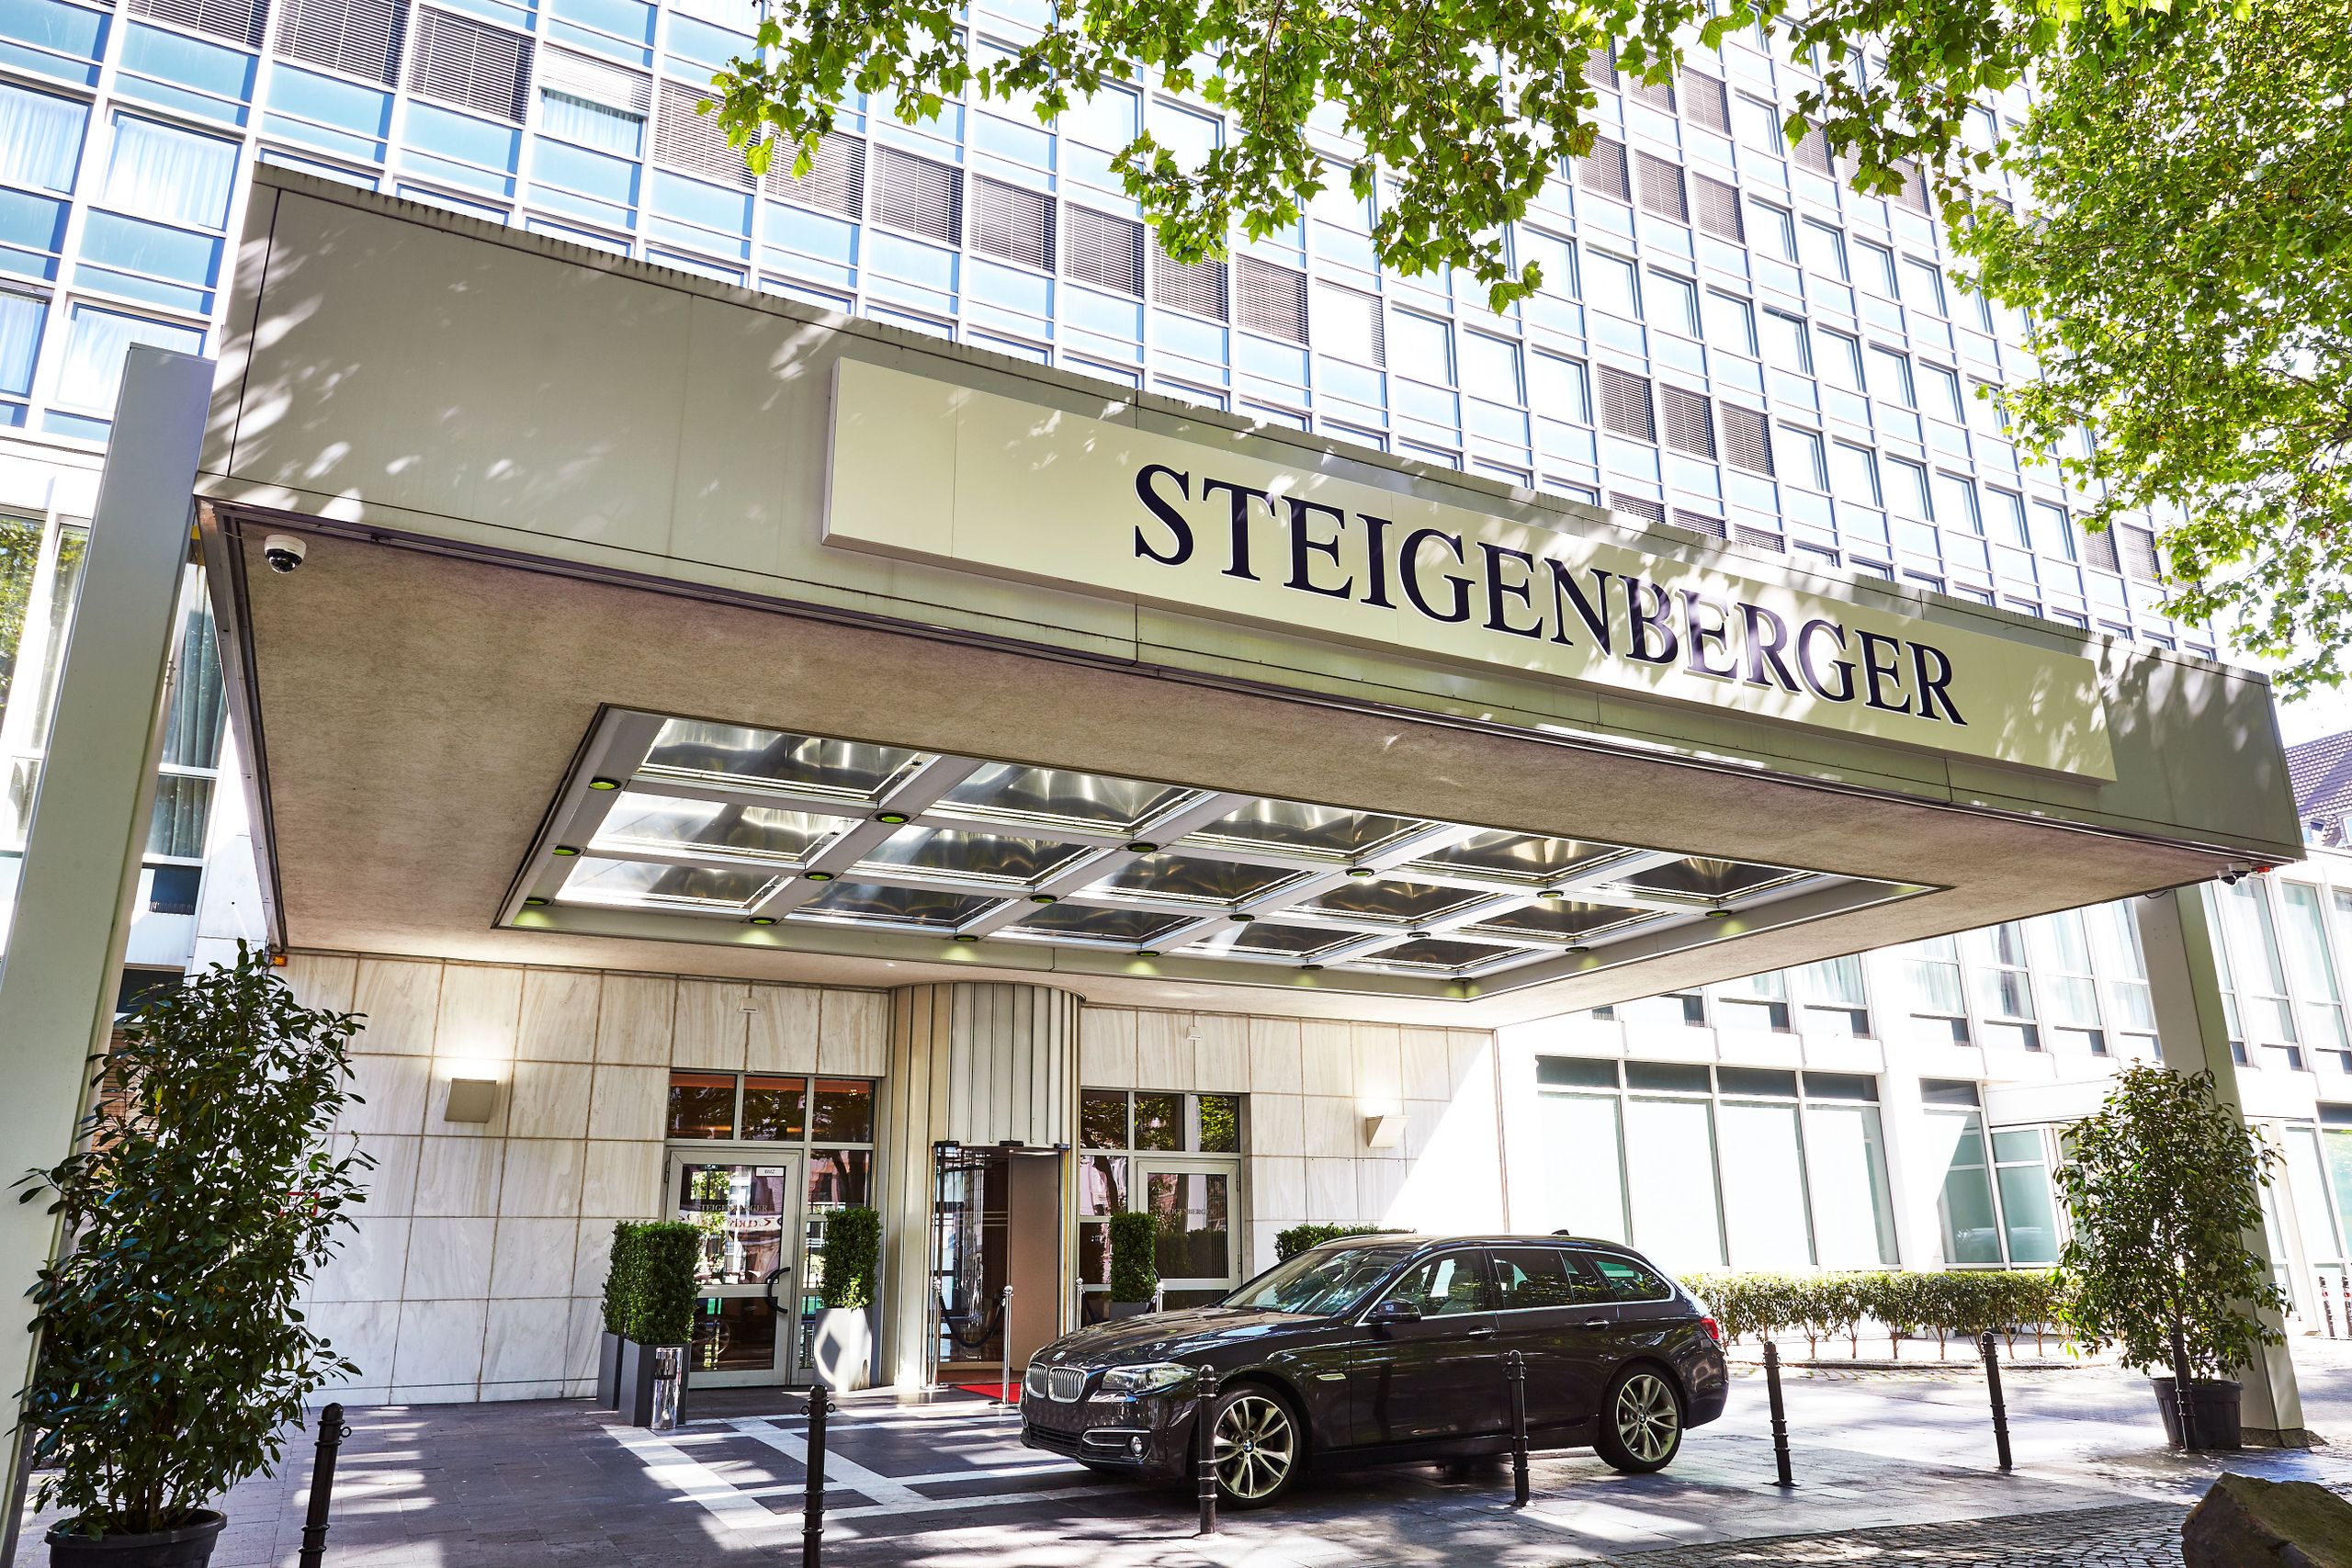 Steigenberger Hotel Köln - Cologne - Eingang